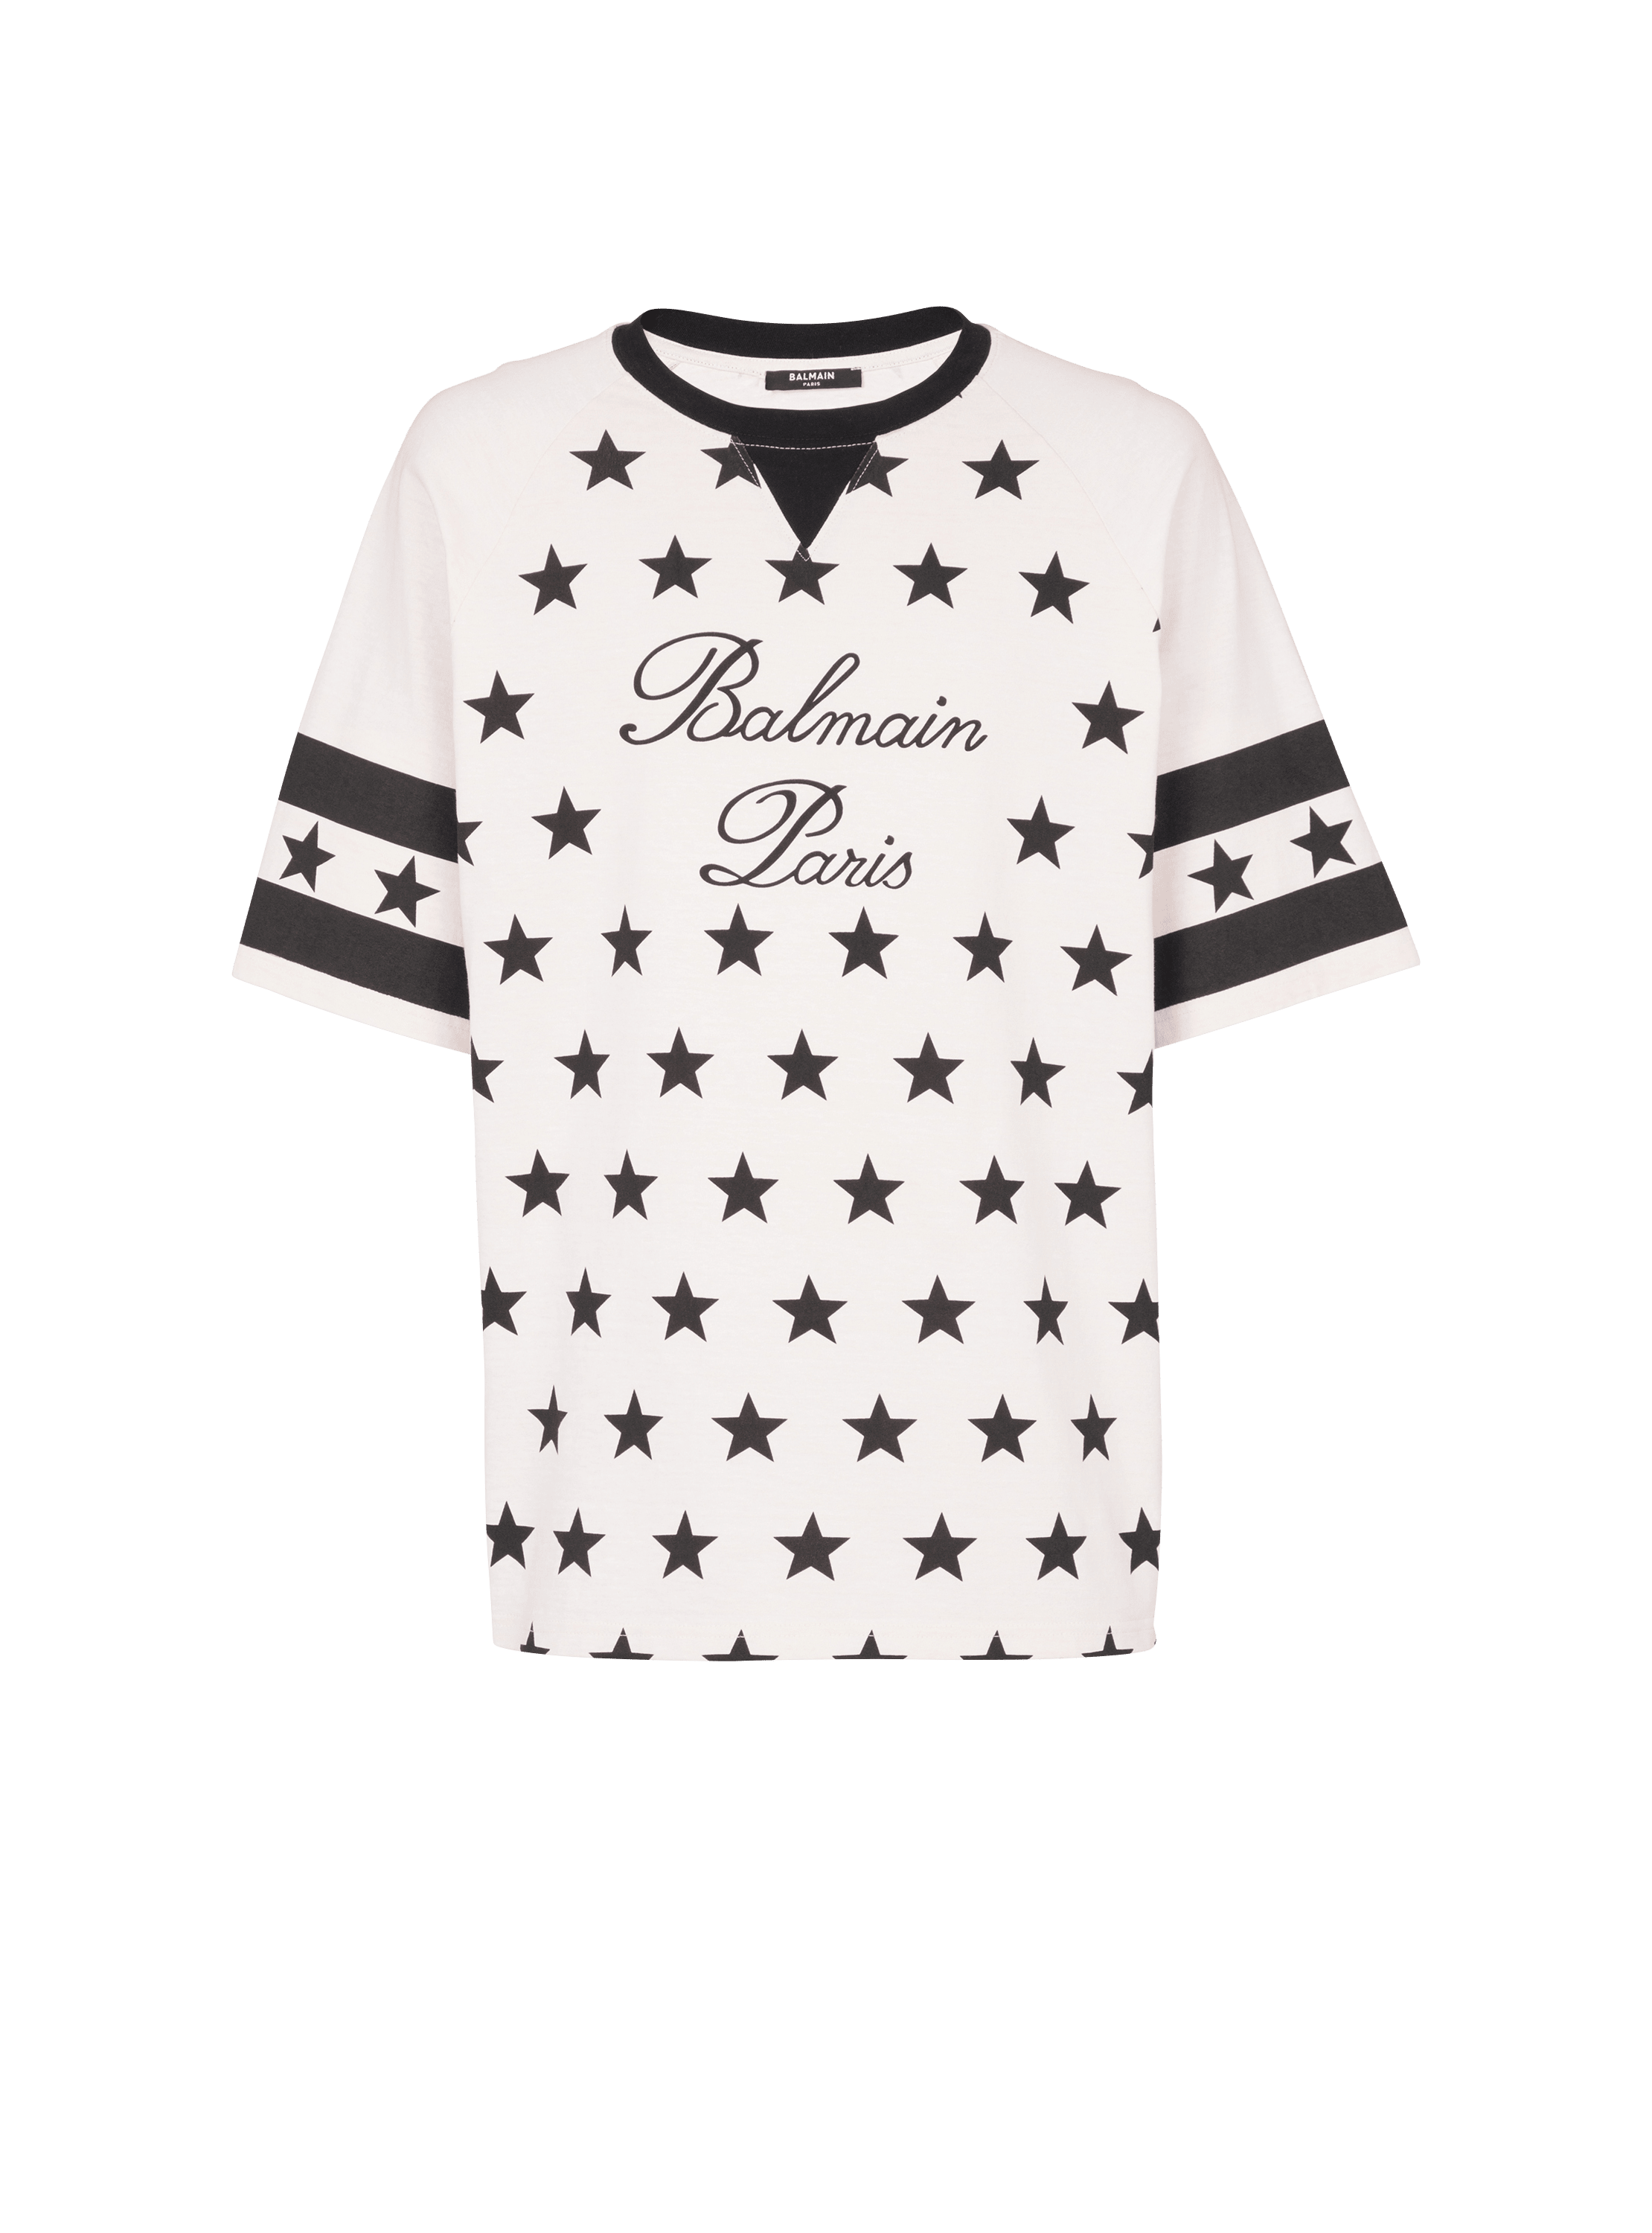 발망 스타 시그니처 티셔츠